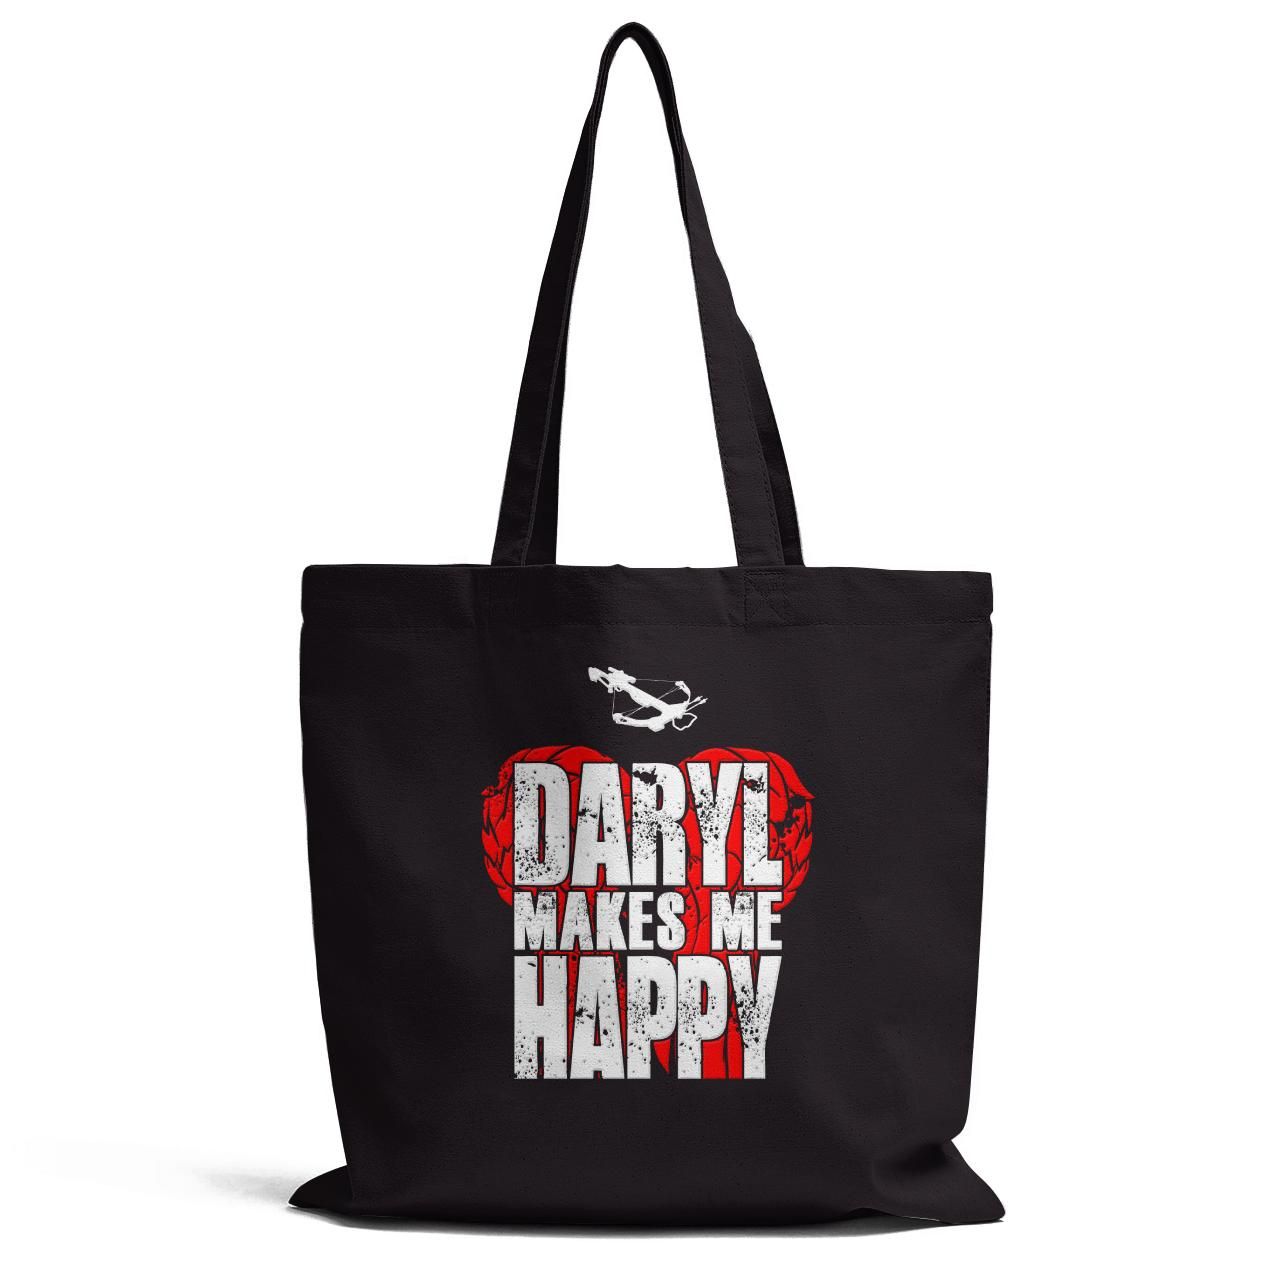 Daryl Makes Me Happy Tote Bag